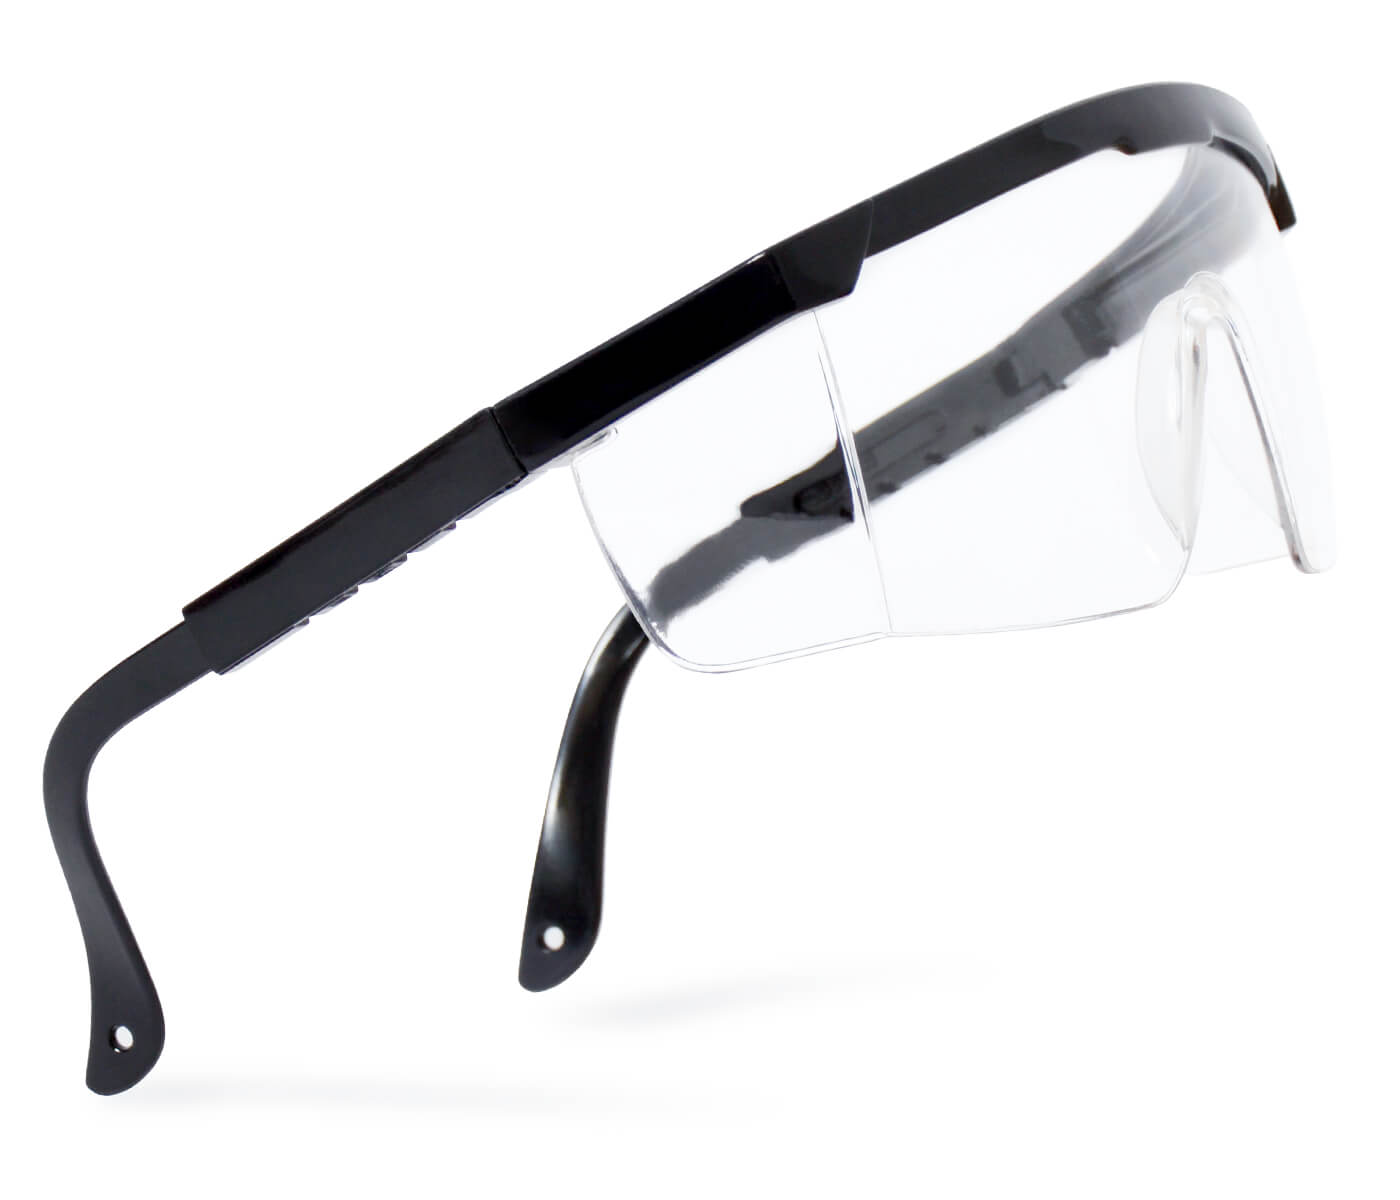 Schutzbrille für Kinder und Erwachsene Arbeitsbrille Transparent Überbrille Seitenschutz für Brillenträger Robust Ausziehbare Bügel Baustelle Labor Werkstatt